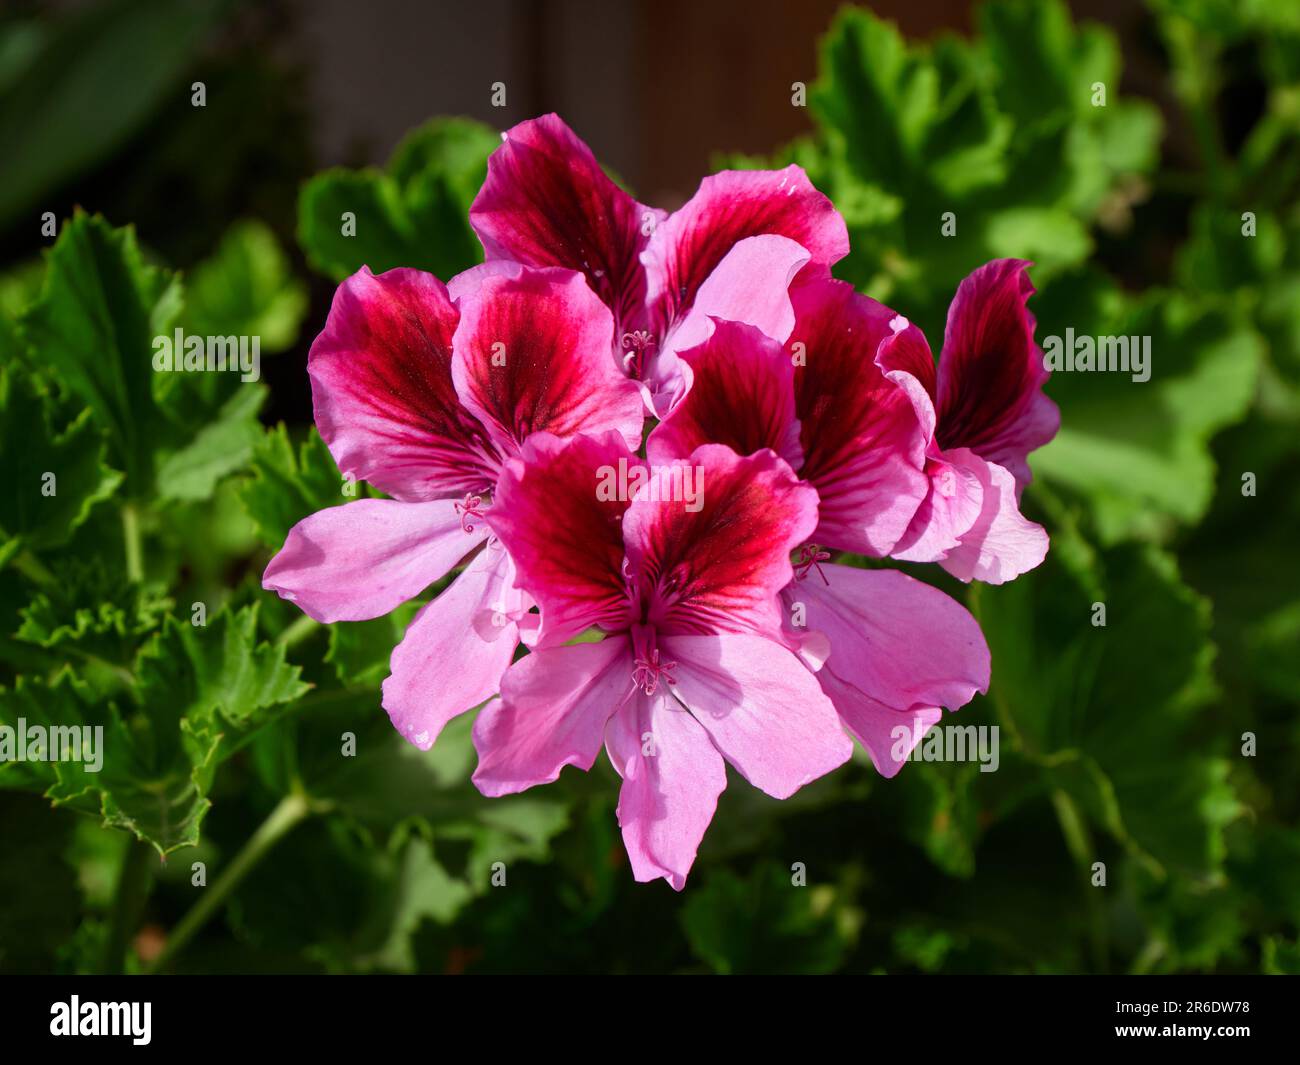 Pelargonium grandiflorum (Geráneo Pensamiento) Stock Photo